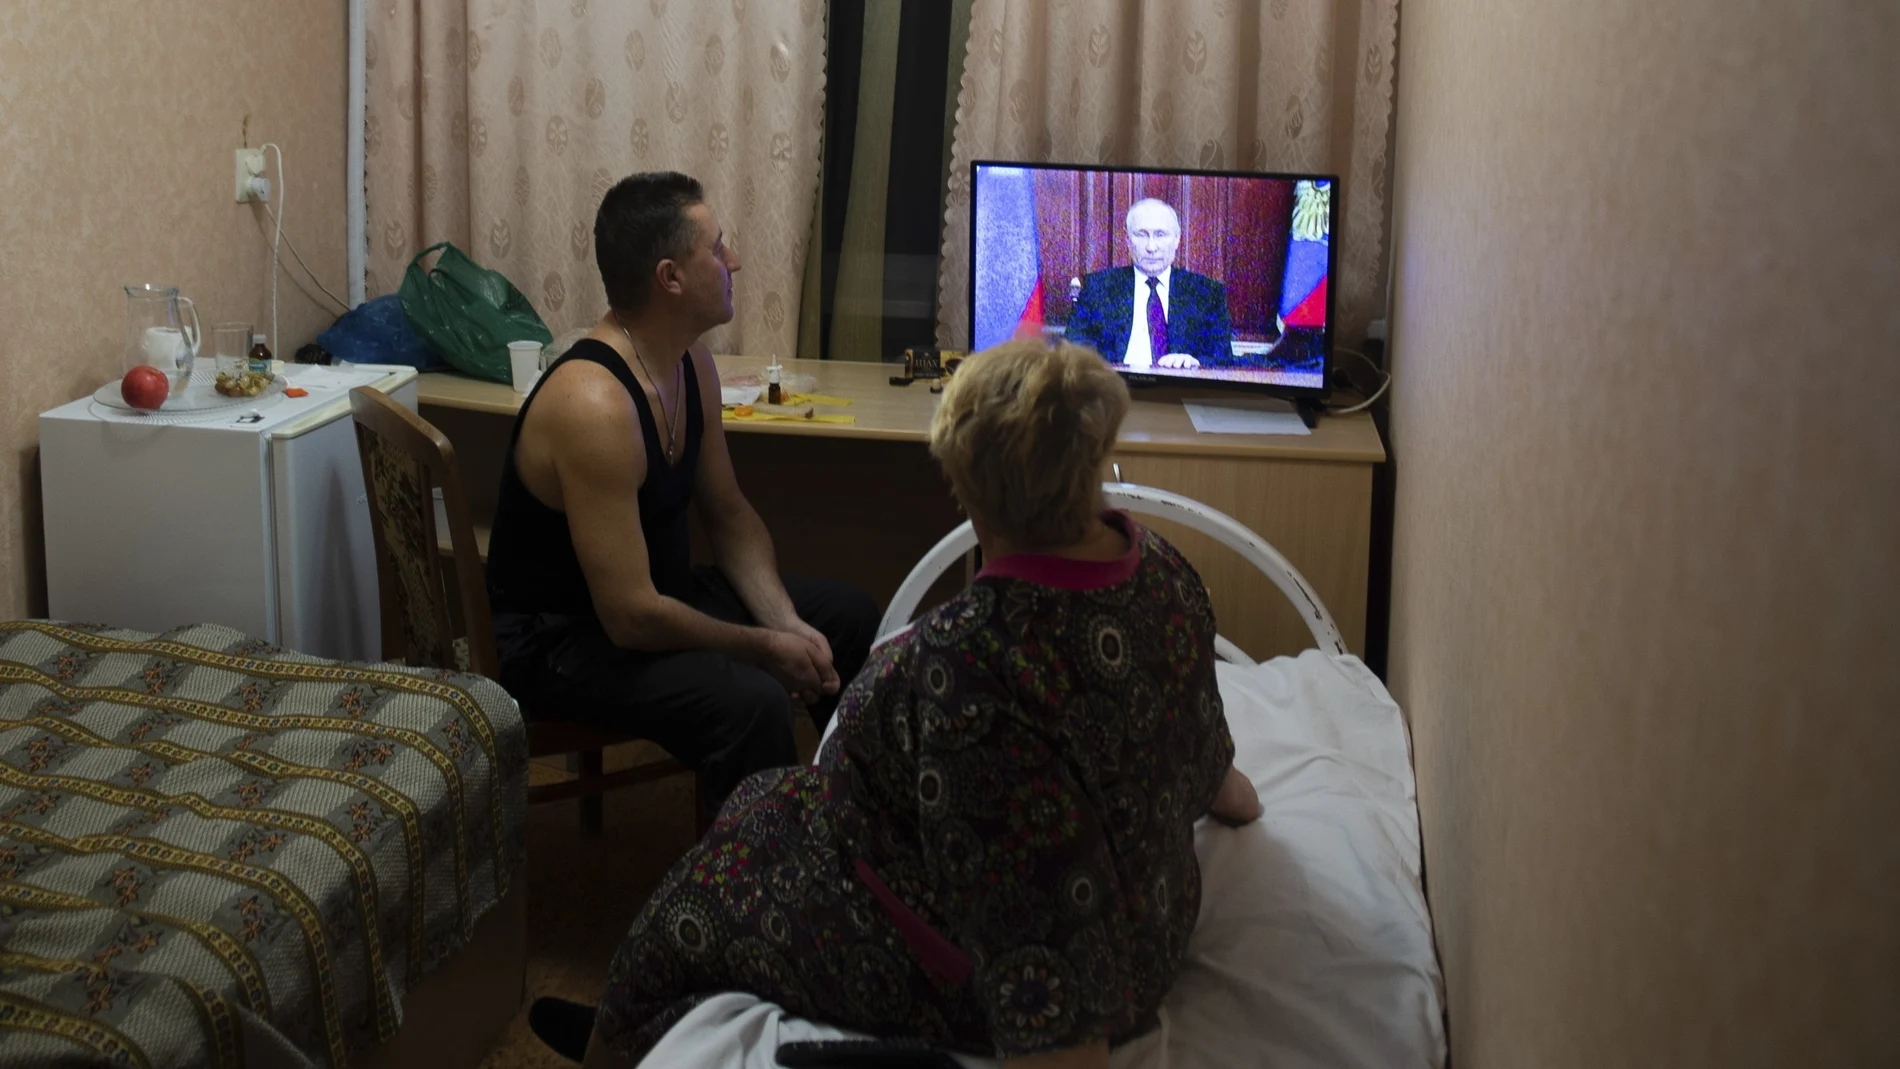 Residentes de las regiones de Donetsk y Lugansk, el territorio controlado por gobiernos separatistas prorrusos en el este de Ucrania, observan el discurso del presidente ruso, Vladimir Putin